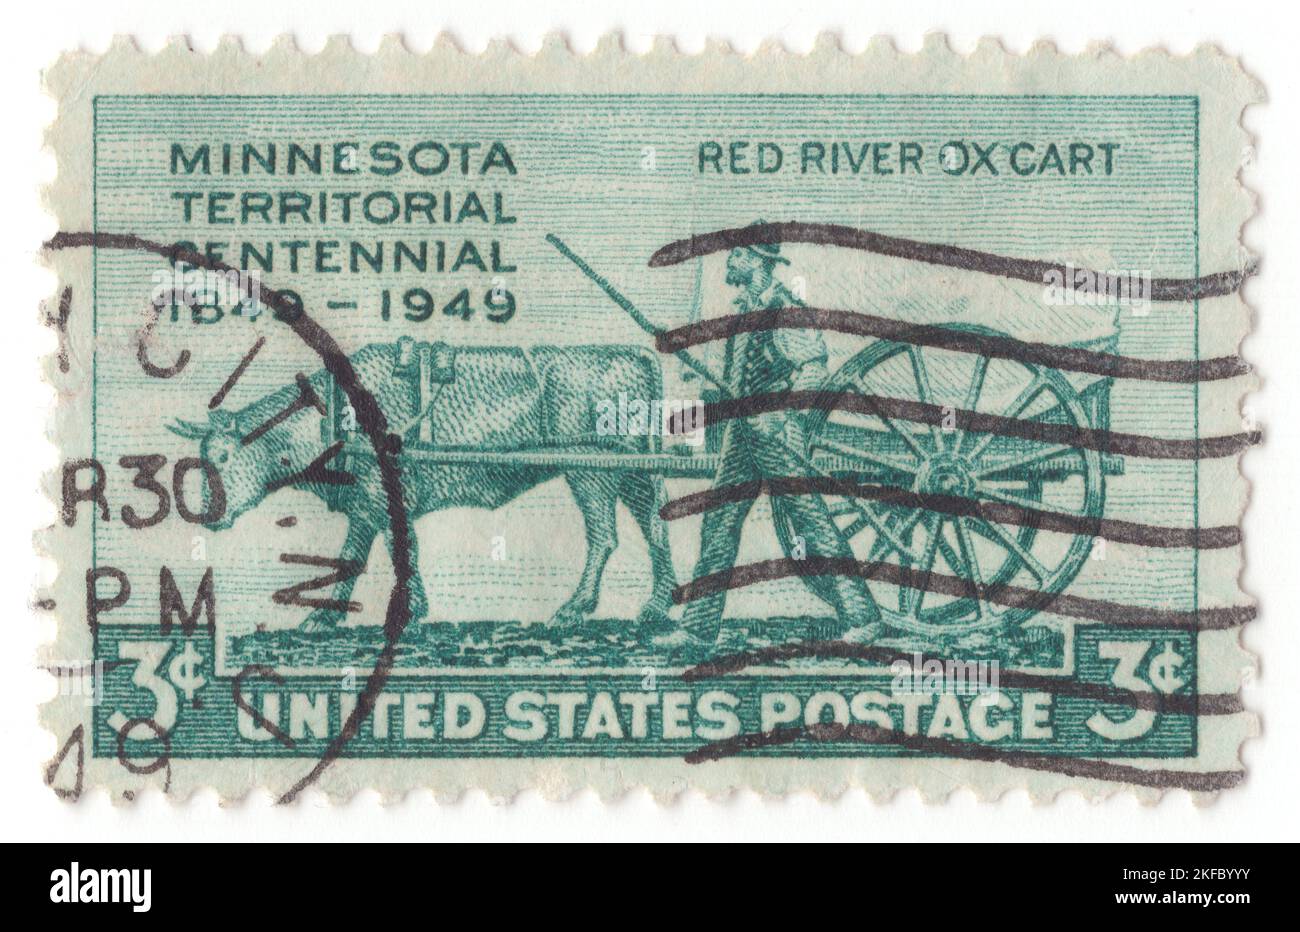 États-Unis - 1949 3 mars : timbre-poste bleu-vert de 3 cents représentant le chariot d'Ox de Pioneer et de Red River. Territoire du Minnesota. Centenaire de l'établissement du territoire du Minnesota Banque D'Images